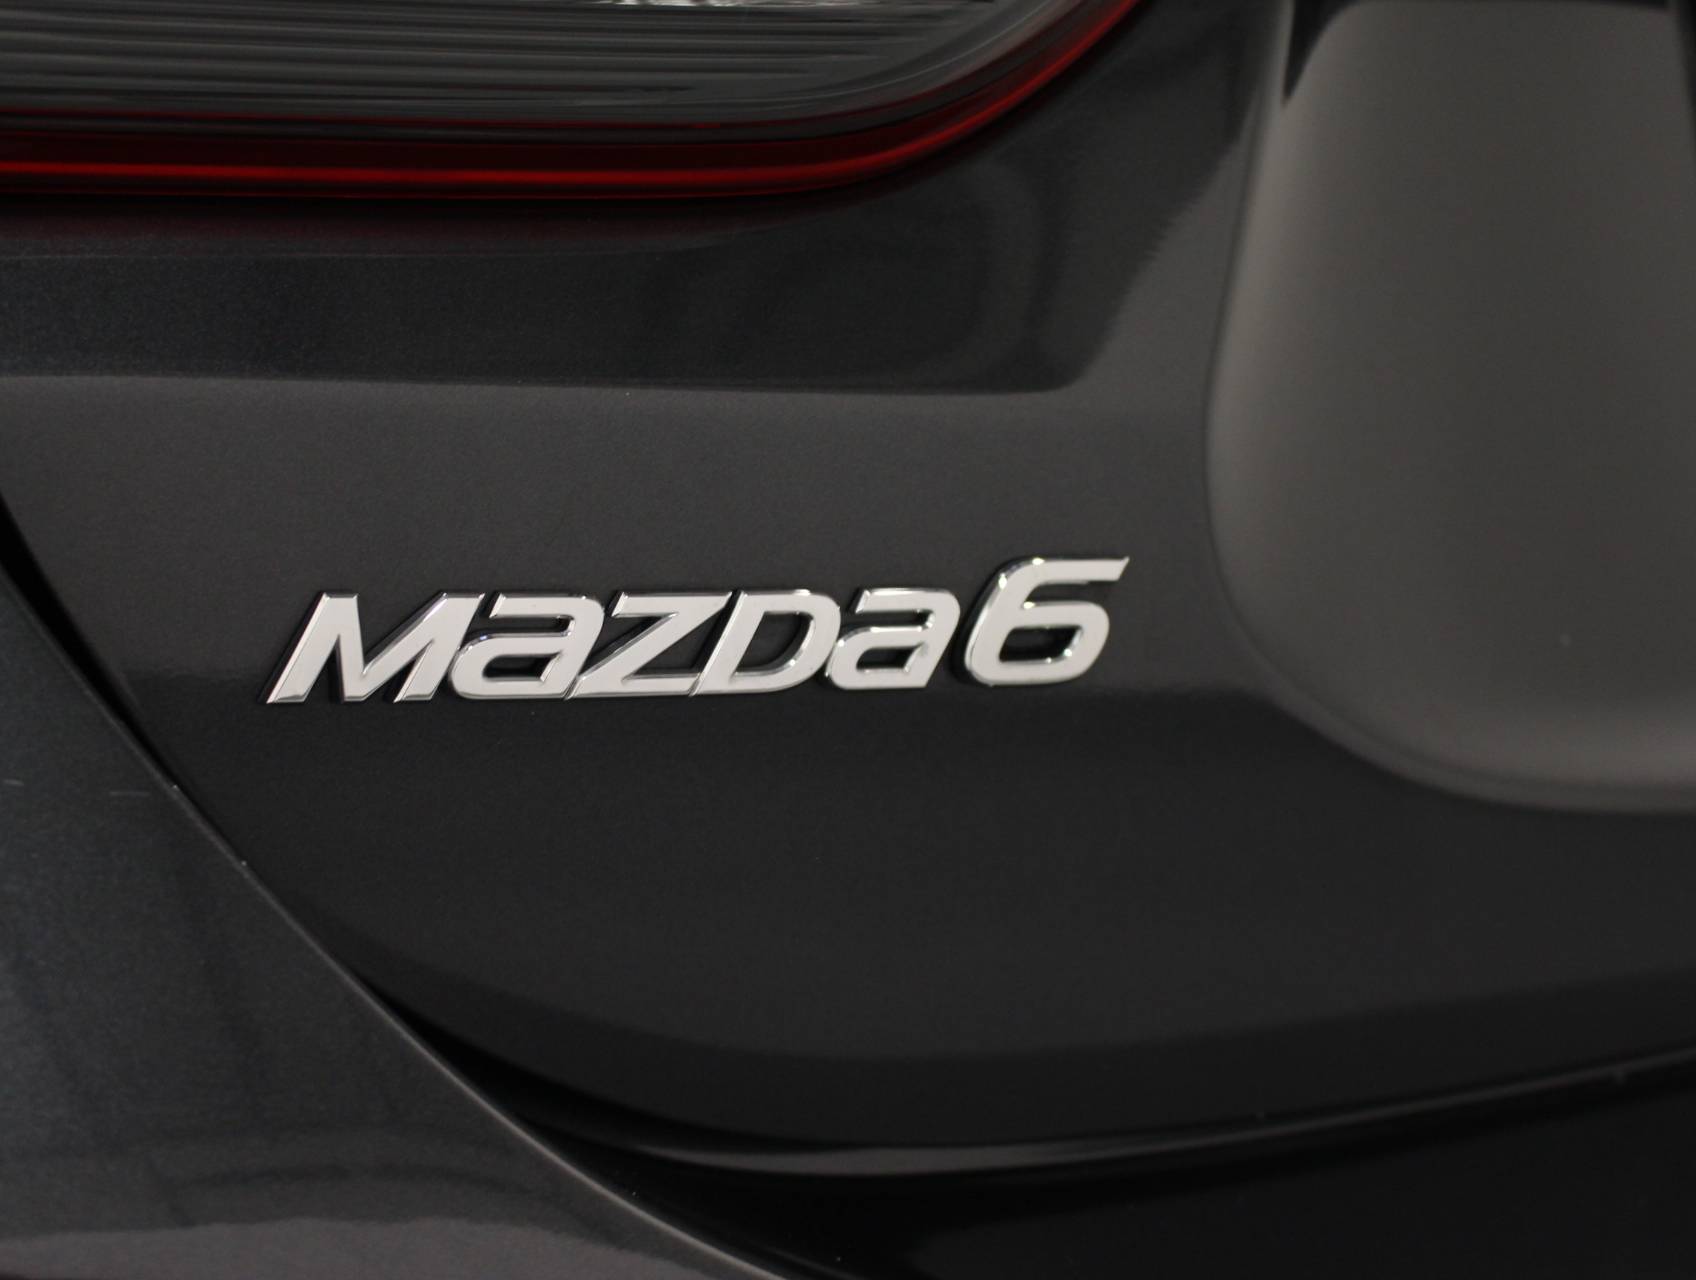 Florida Fine Cars - Used MAZDA MAZDA6 2016 MARGATE SPORT